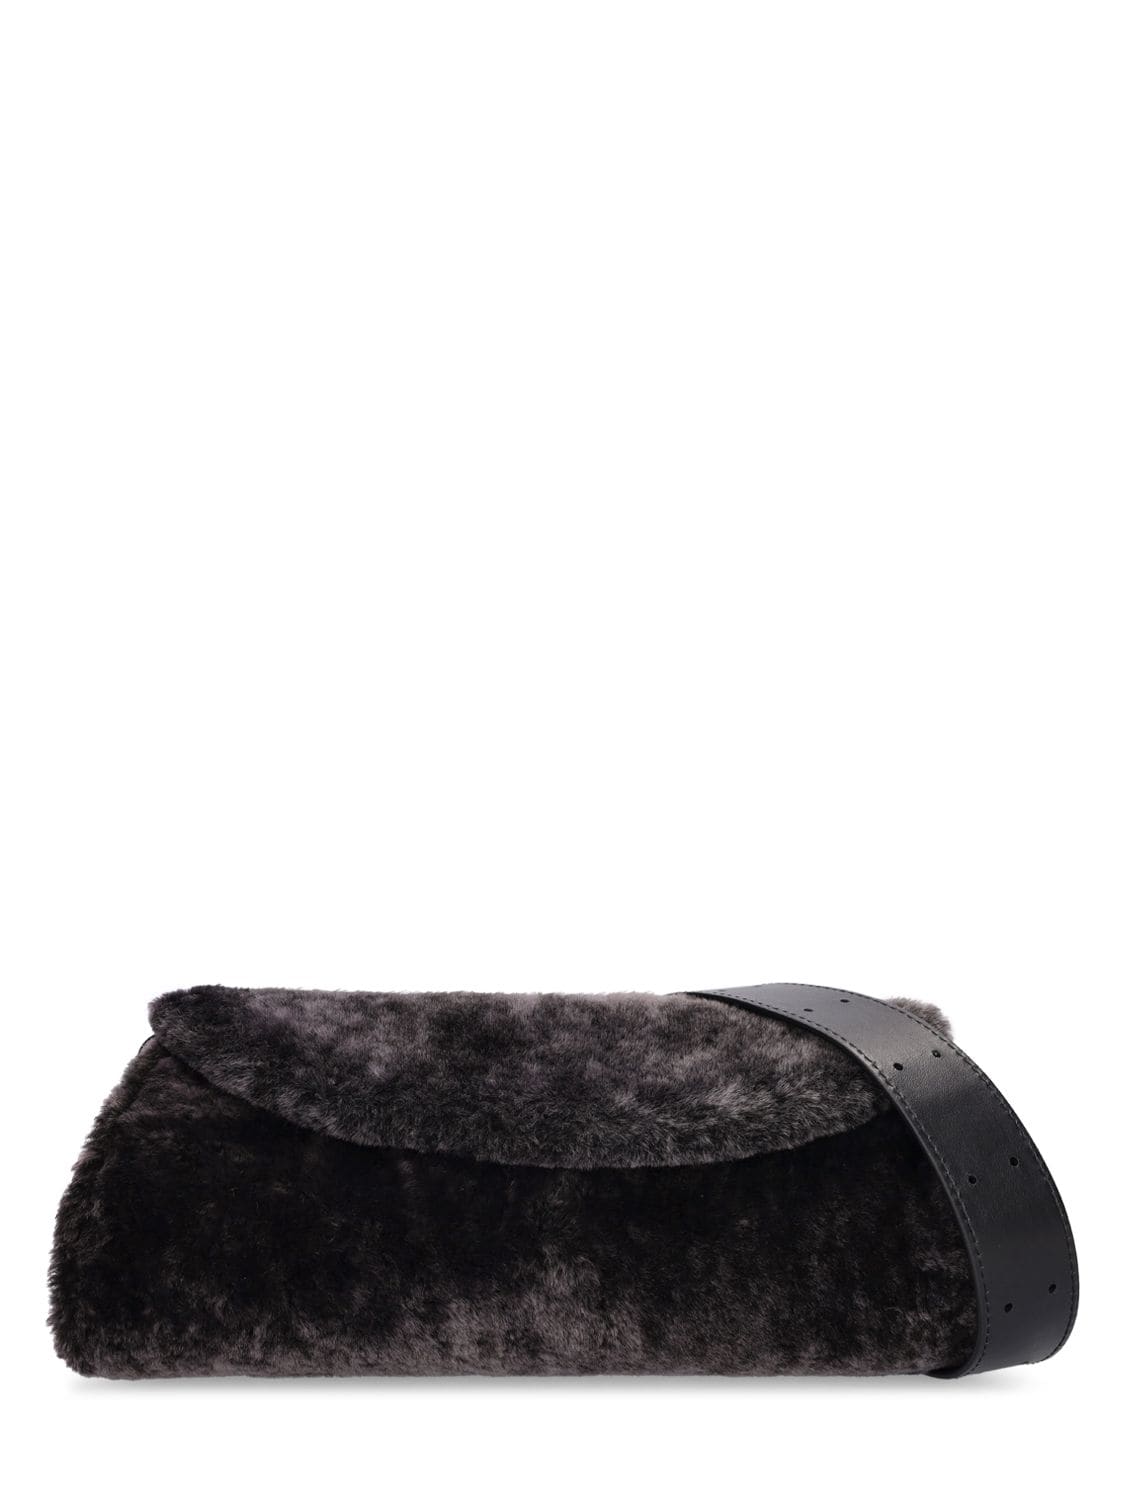 Shop Jil Sander Small Cannolo Shearling Shoulder Bag In Black